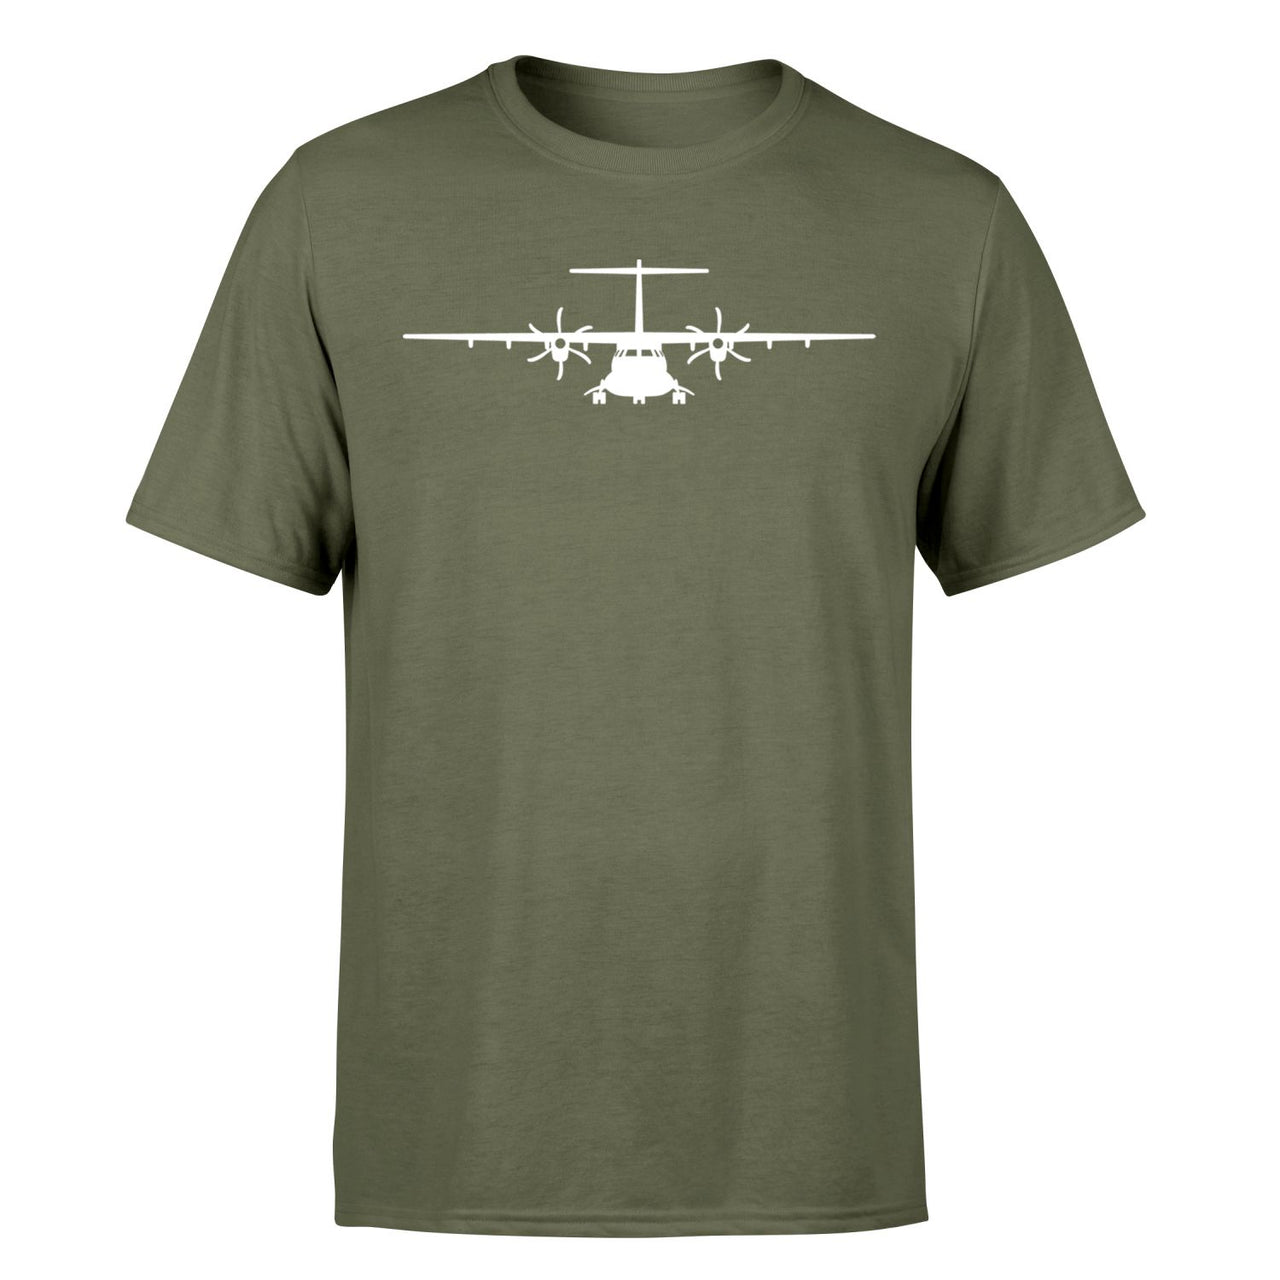 ATR-72 Silhouette Designed T-Shirts